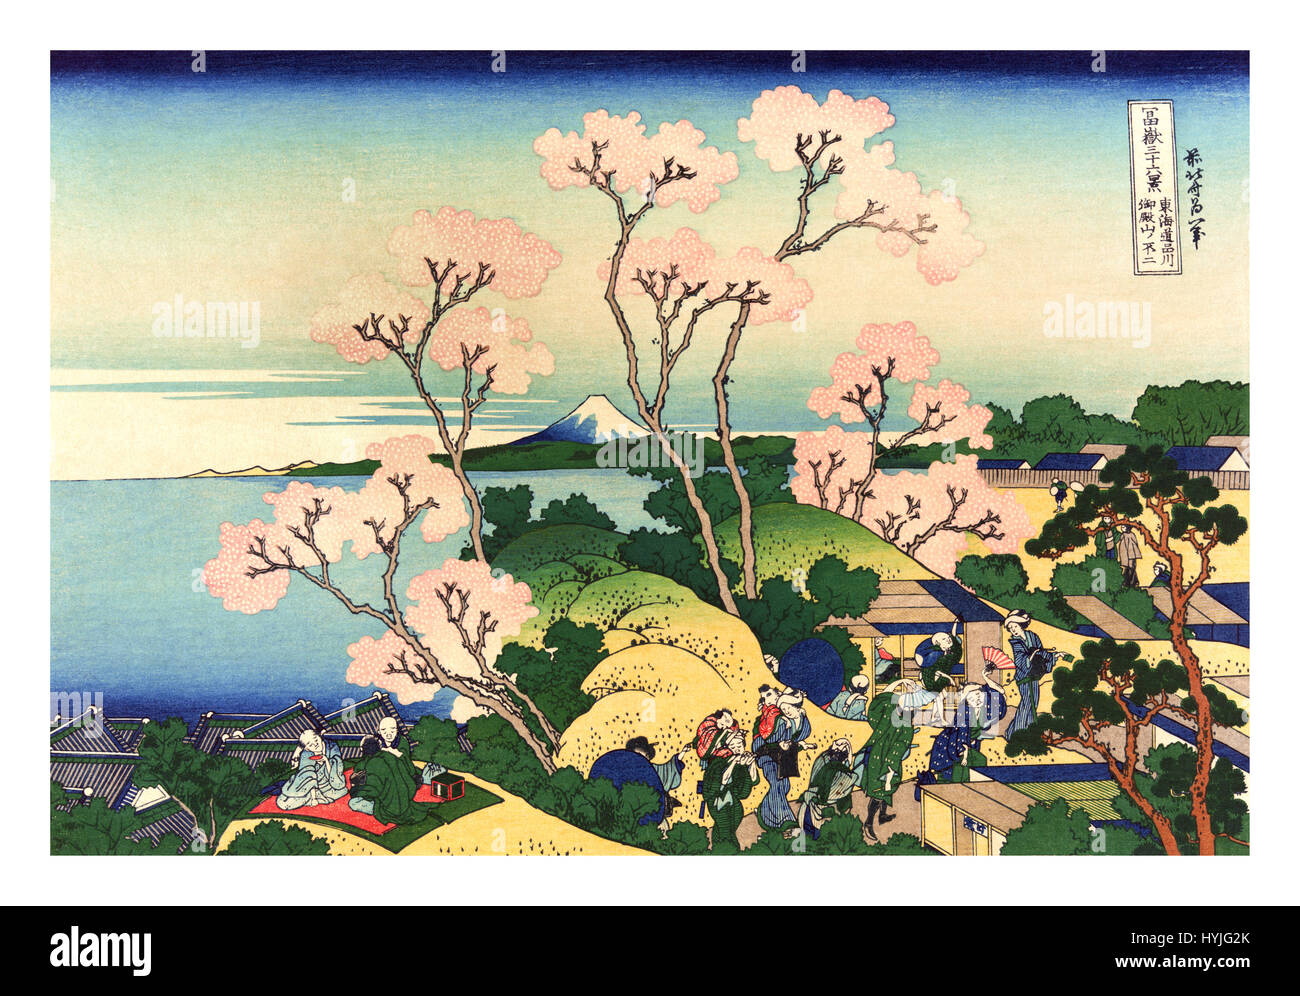 Trente-six vues du Mont Fuji est une série d'estampes de l'artiste japonais Hokusai (1760-1849). La série représente le mont Fuji depuis différents endroits et en différentes saisons et les conditions météorologiques. Banque D'Images